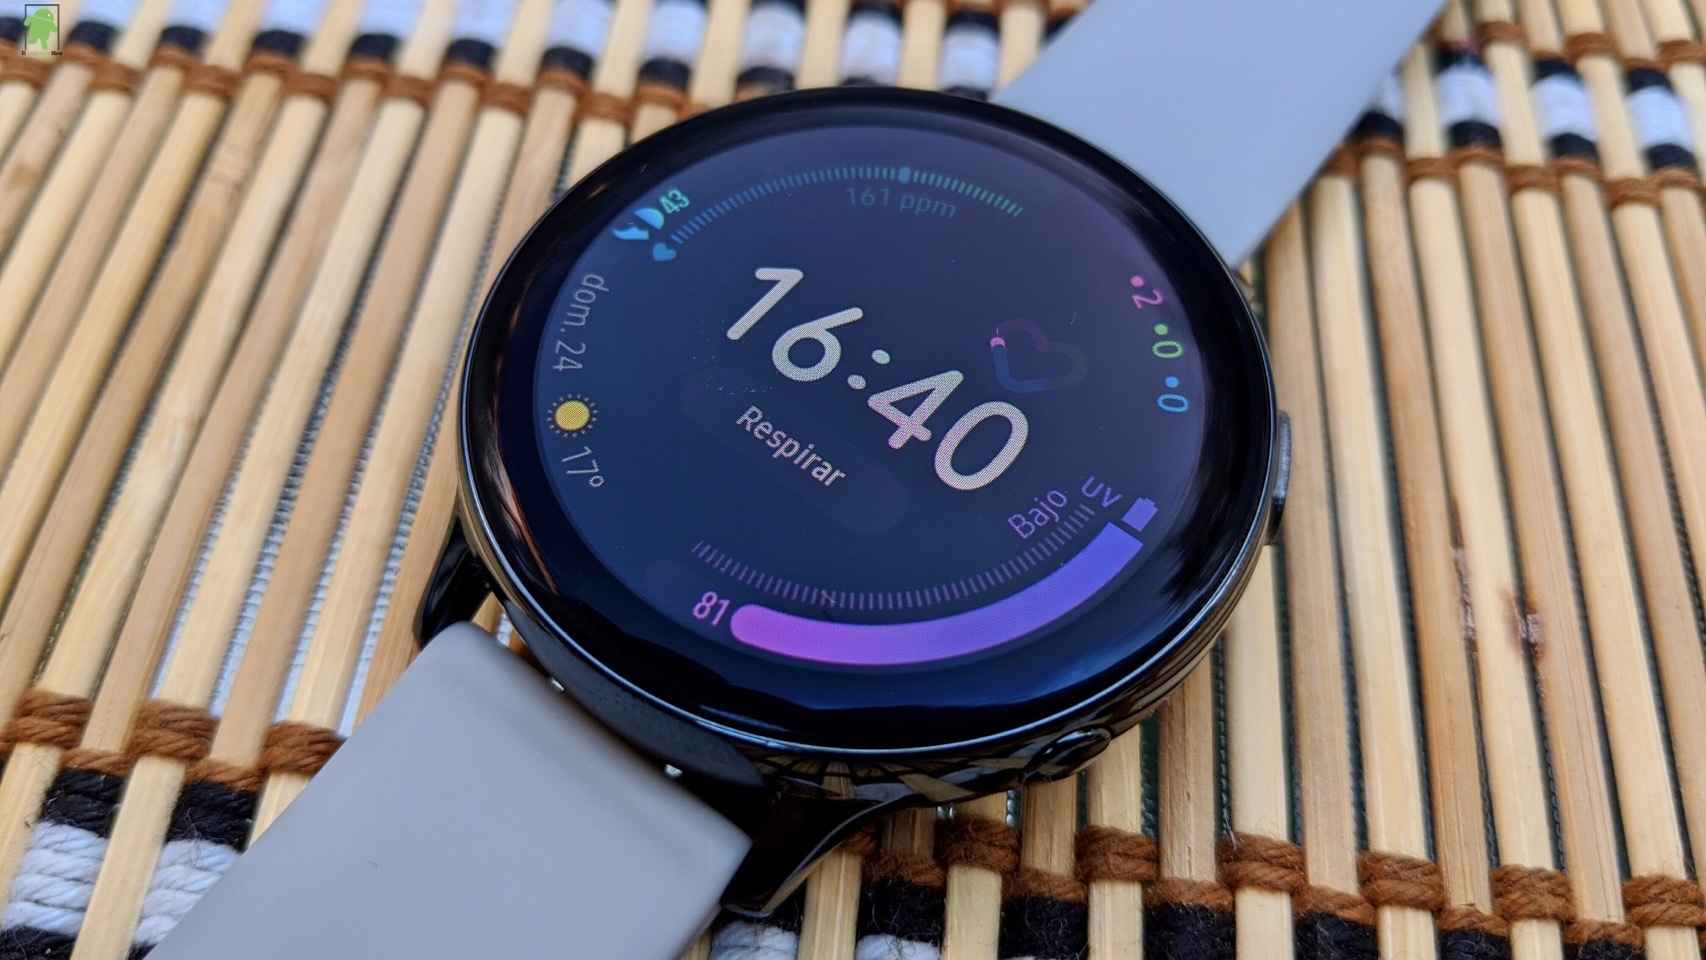 Cómo medir la presión arterial con tu reloj Samsung